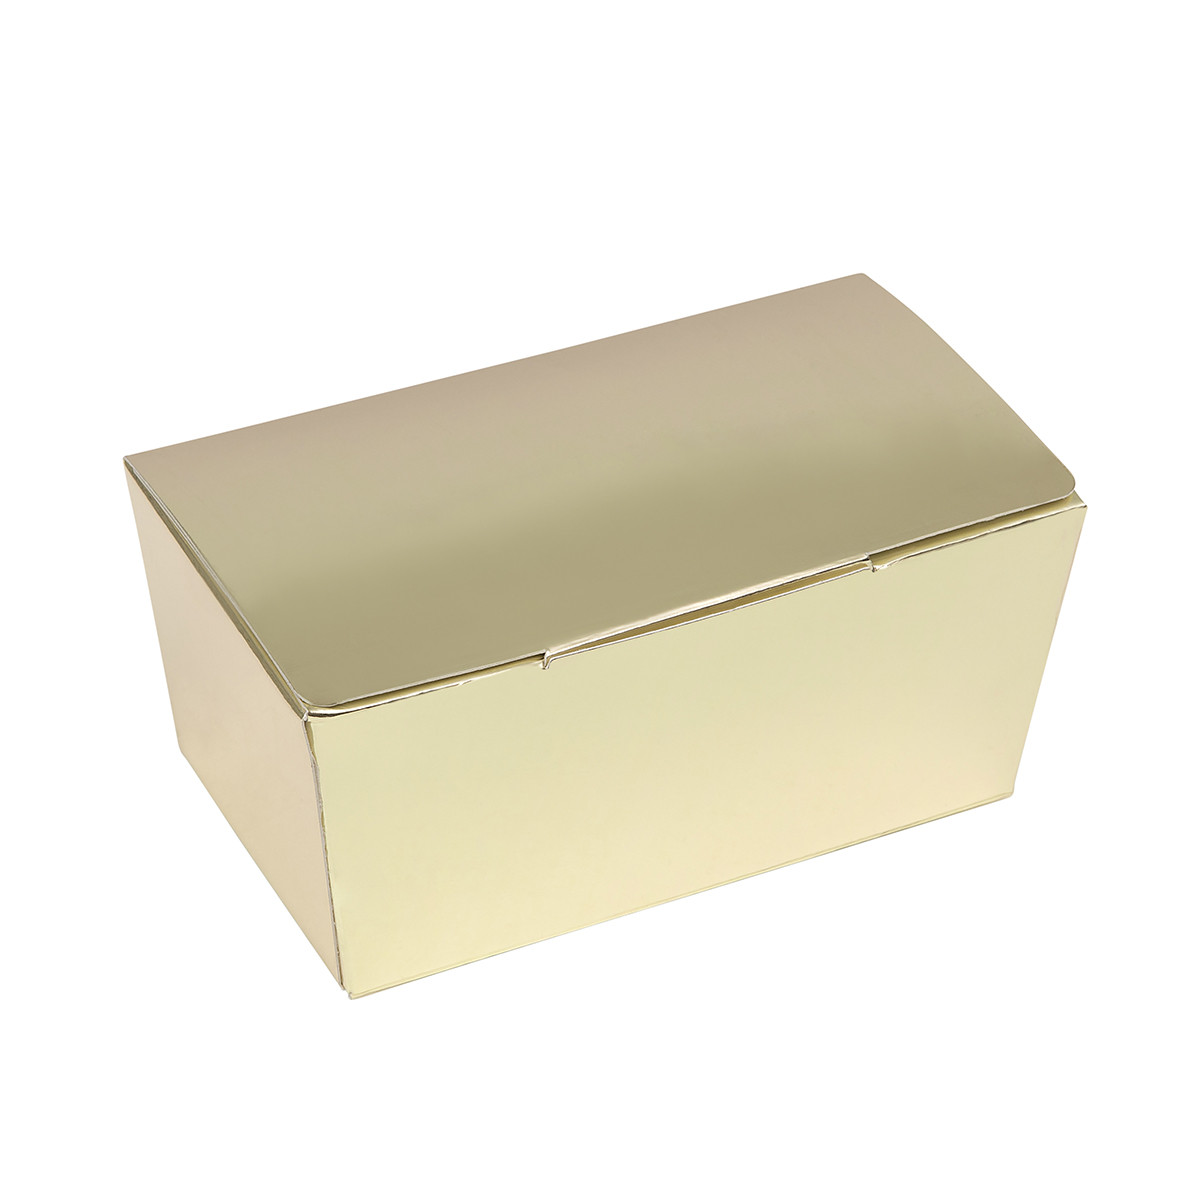 Bonbon box Gold Metallic -375 grams- 25 pieces